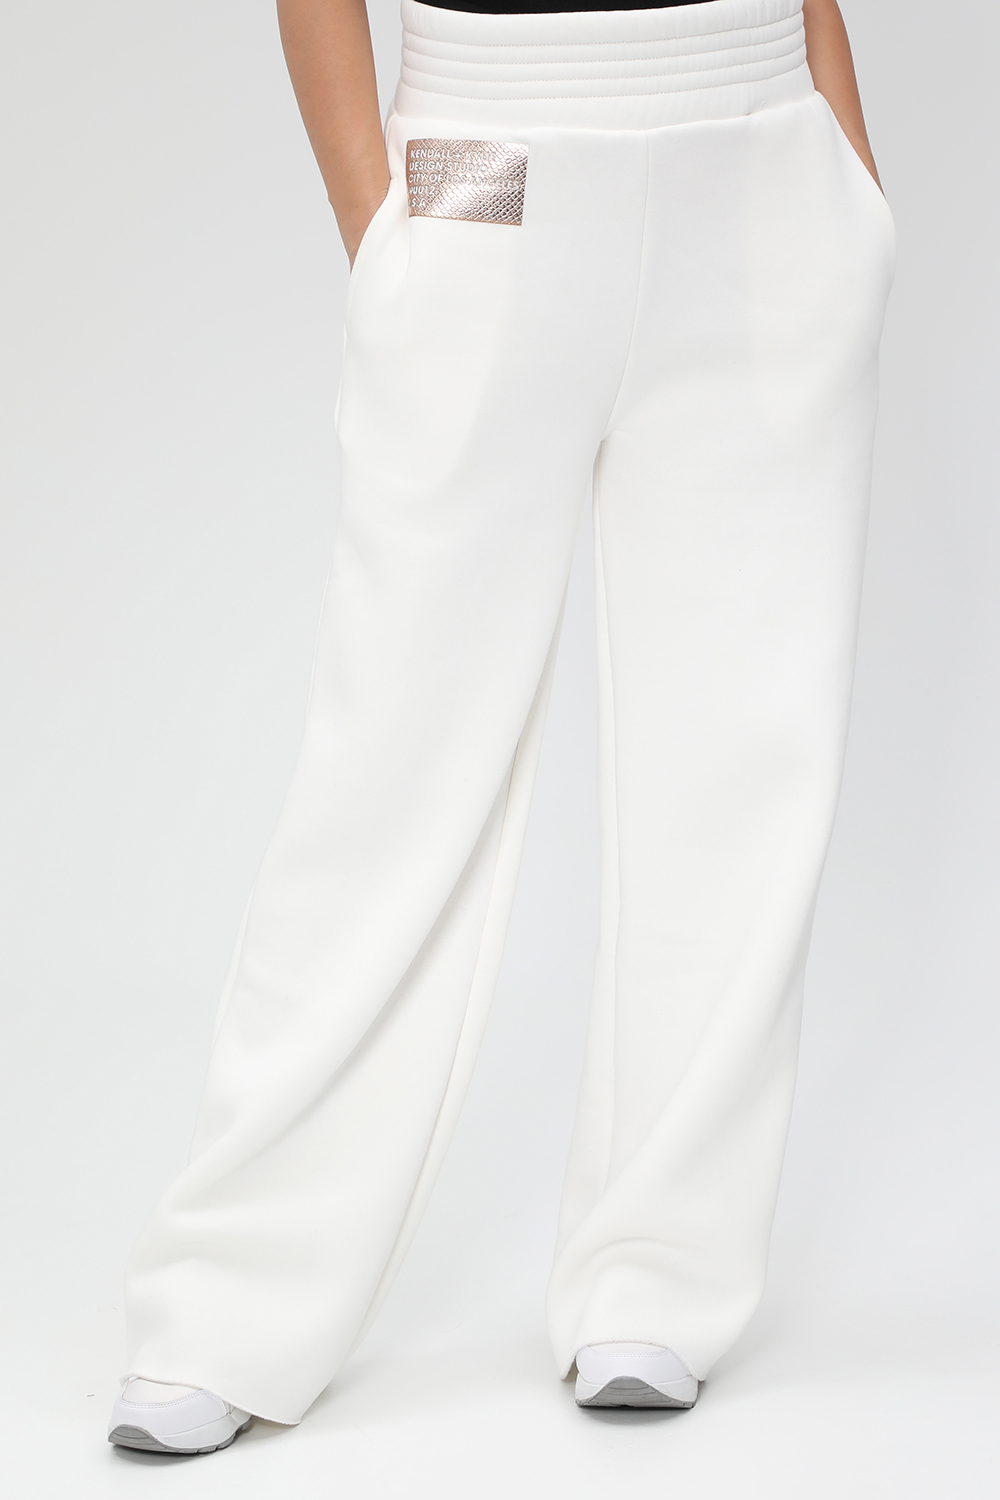 KENDALL + KYLIE – Γυναικείο παντελόνι φόρμας KENDALL + KYLIE ACTIVE BOTTOM λευκό 1826020.0-0090